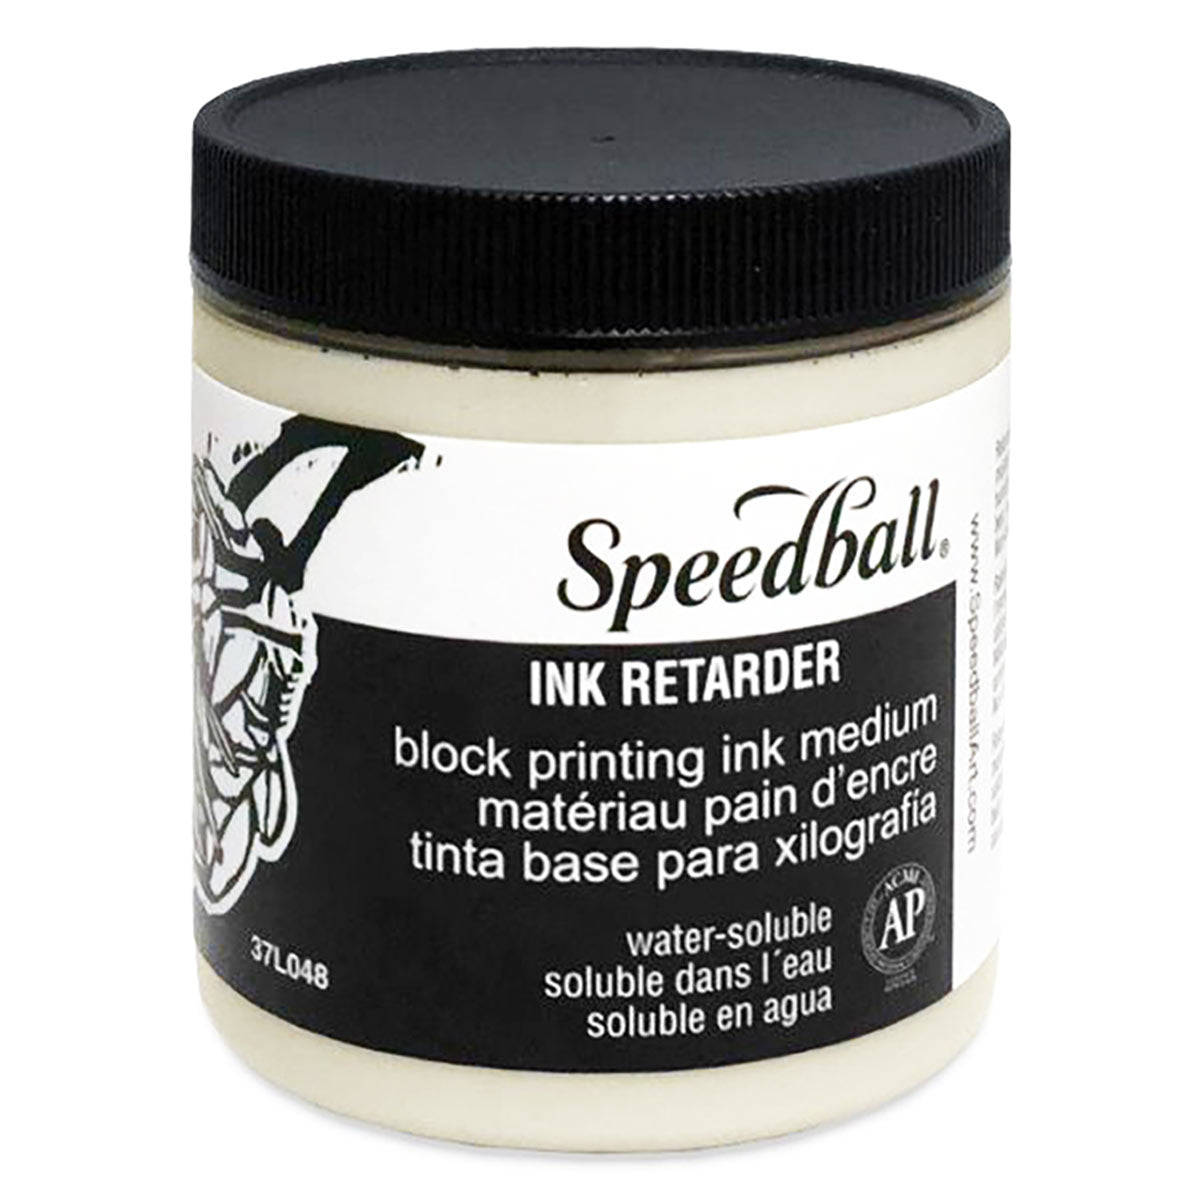 Speedball-Wasser löslicher Block druck Tinte Retarder 236ml (8oz)